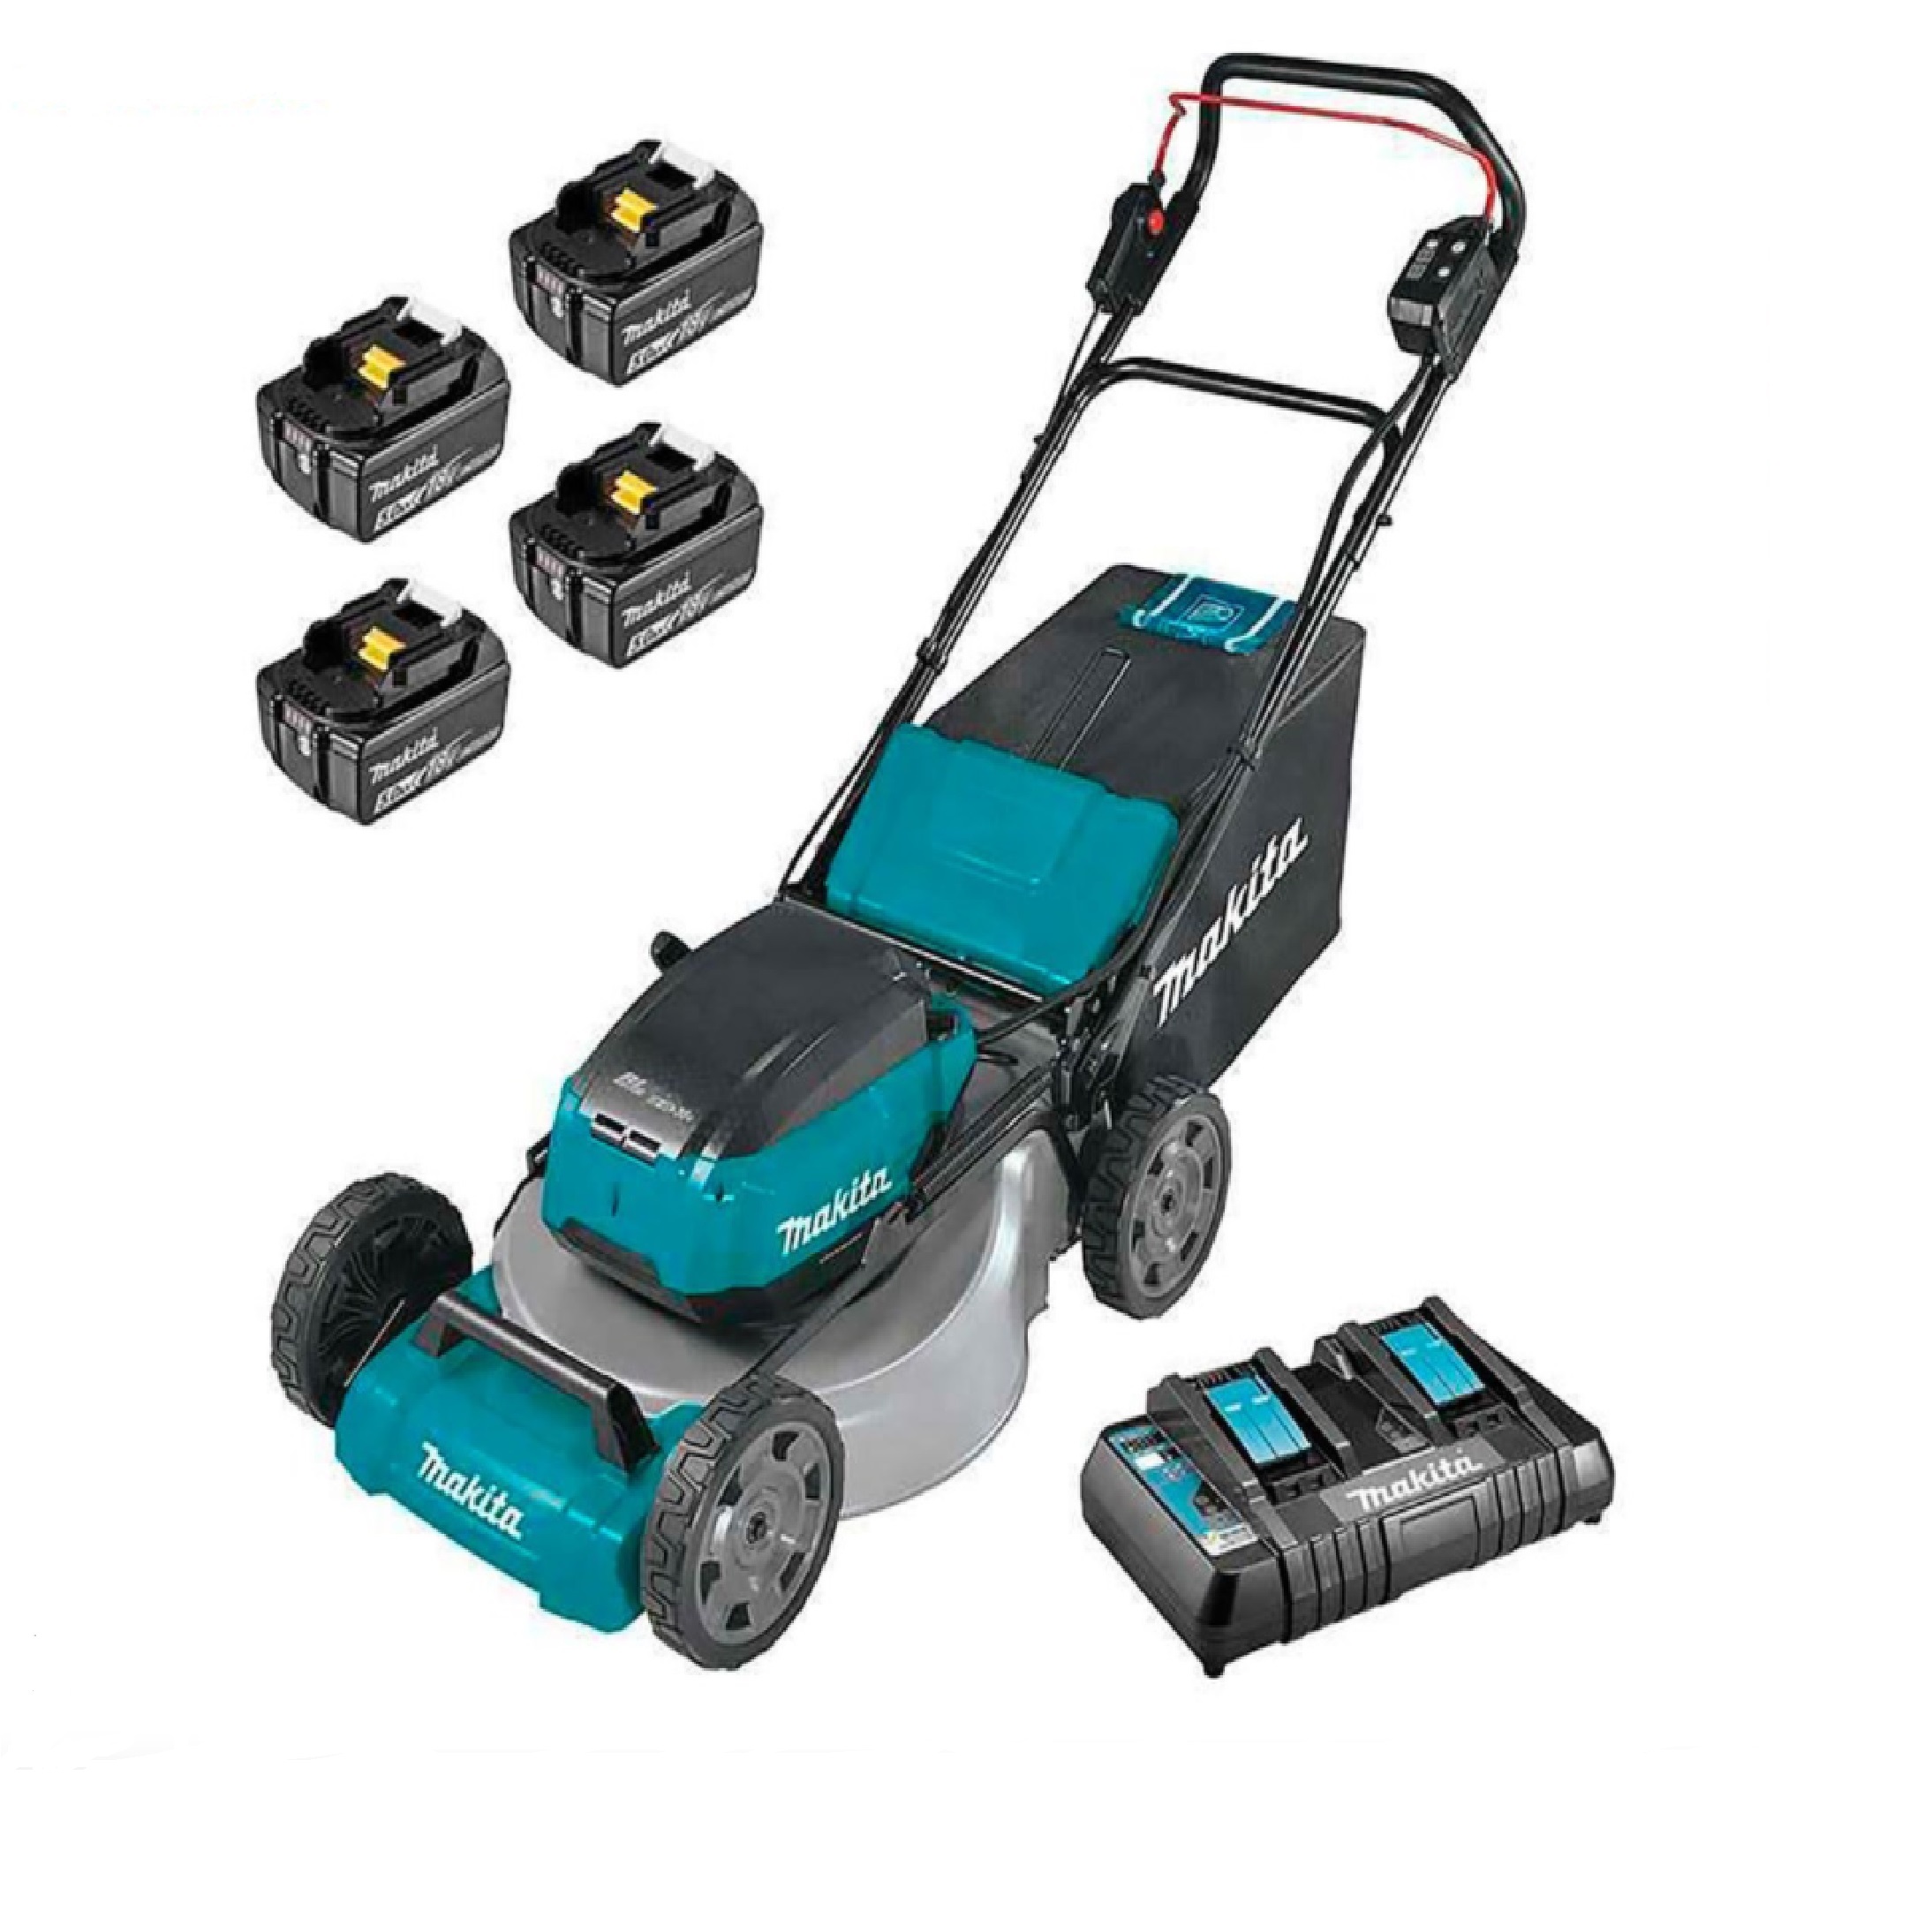 Makita DLM532Z 36V (18V+18V) LI-ION 530MM Brushless Lawn Mower PLUS MKP3PT184 Battery Combo